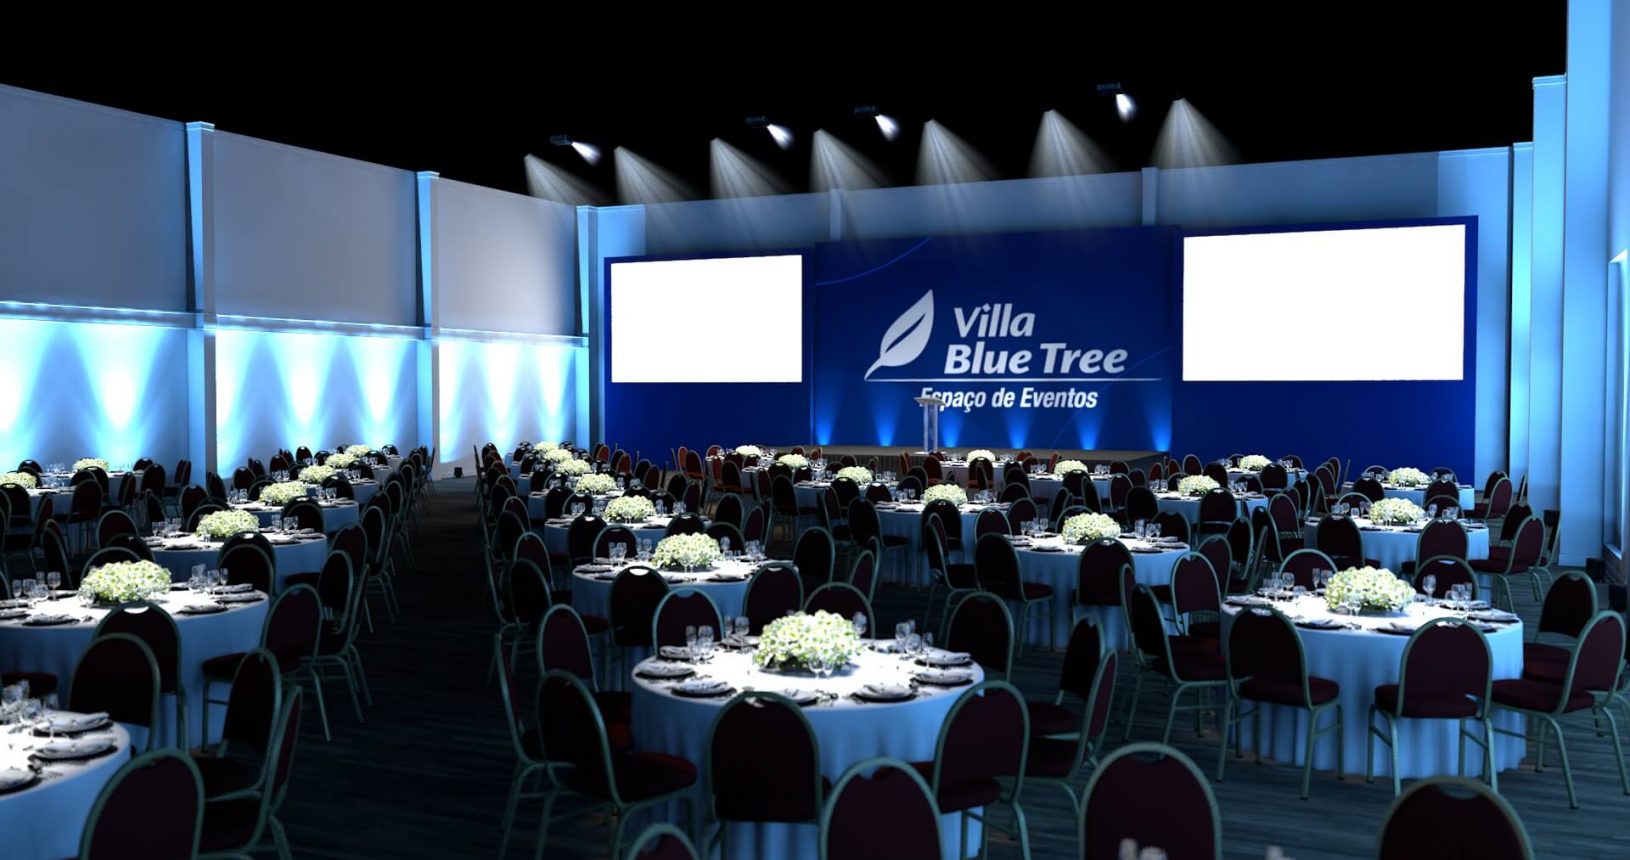 3D do salão TAI-AN no Formato Banquete, com inúmeras cadeiras, mesas, telões e palco para apresentação